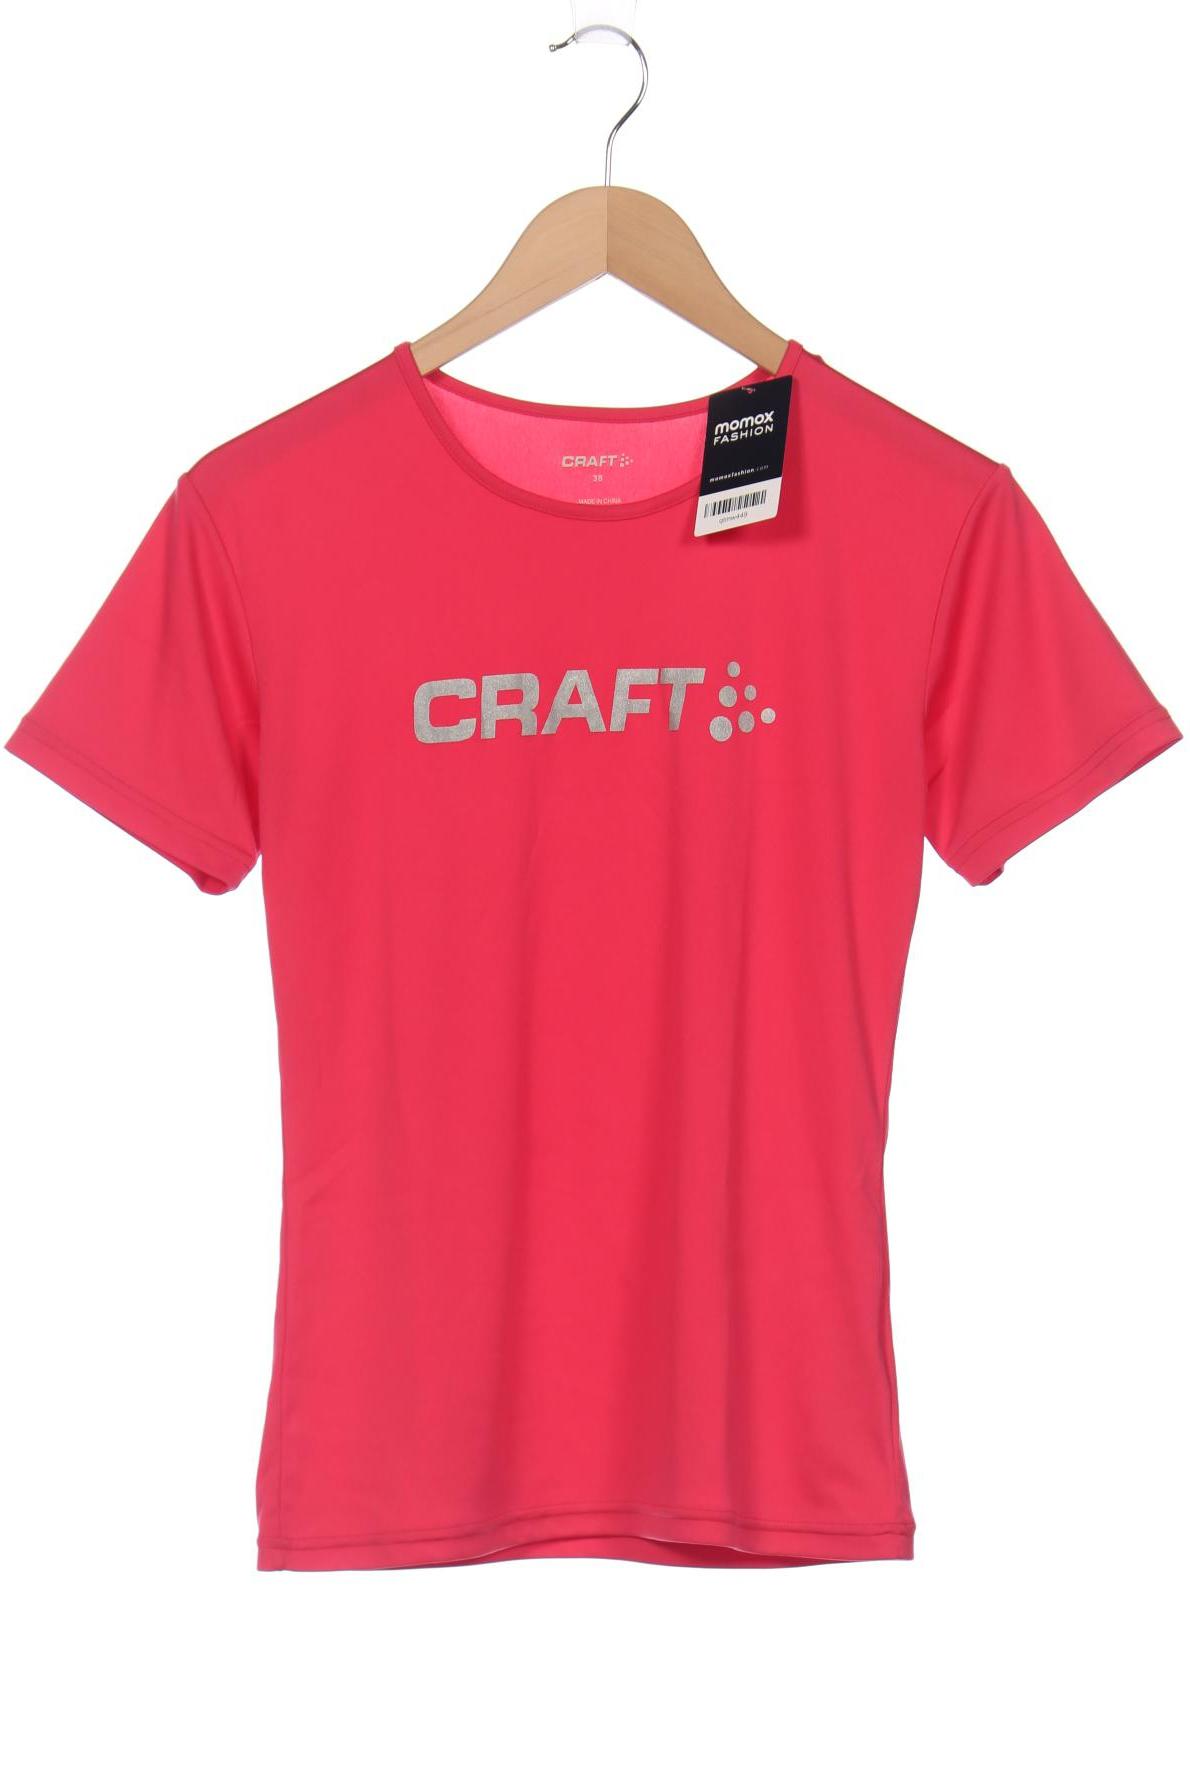 Craft Damen T-Shirt, pink von Craft